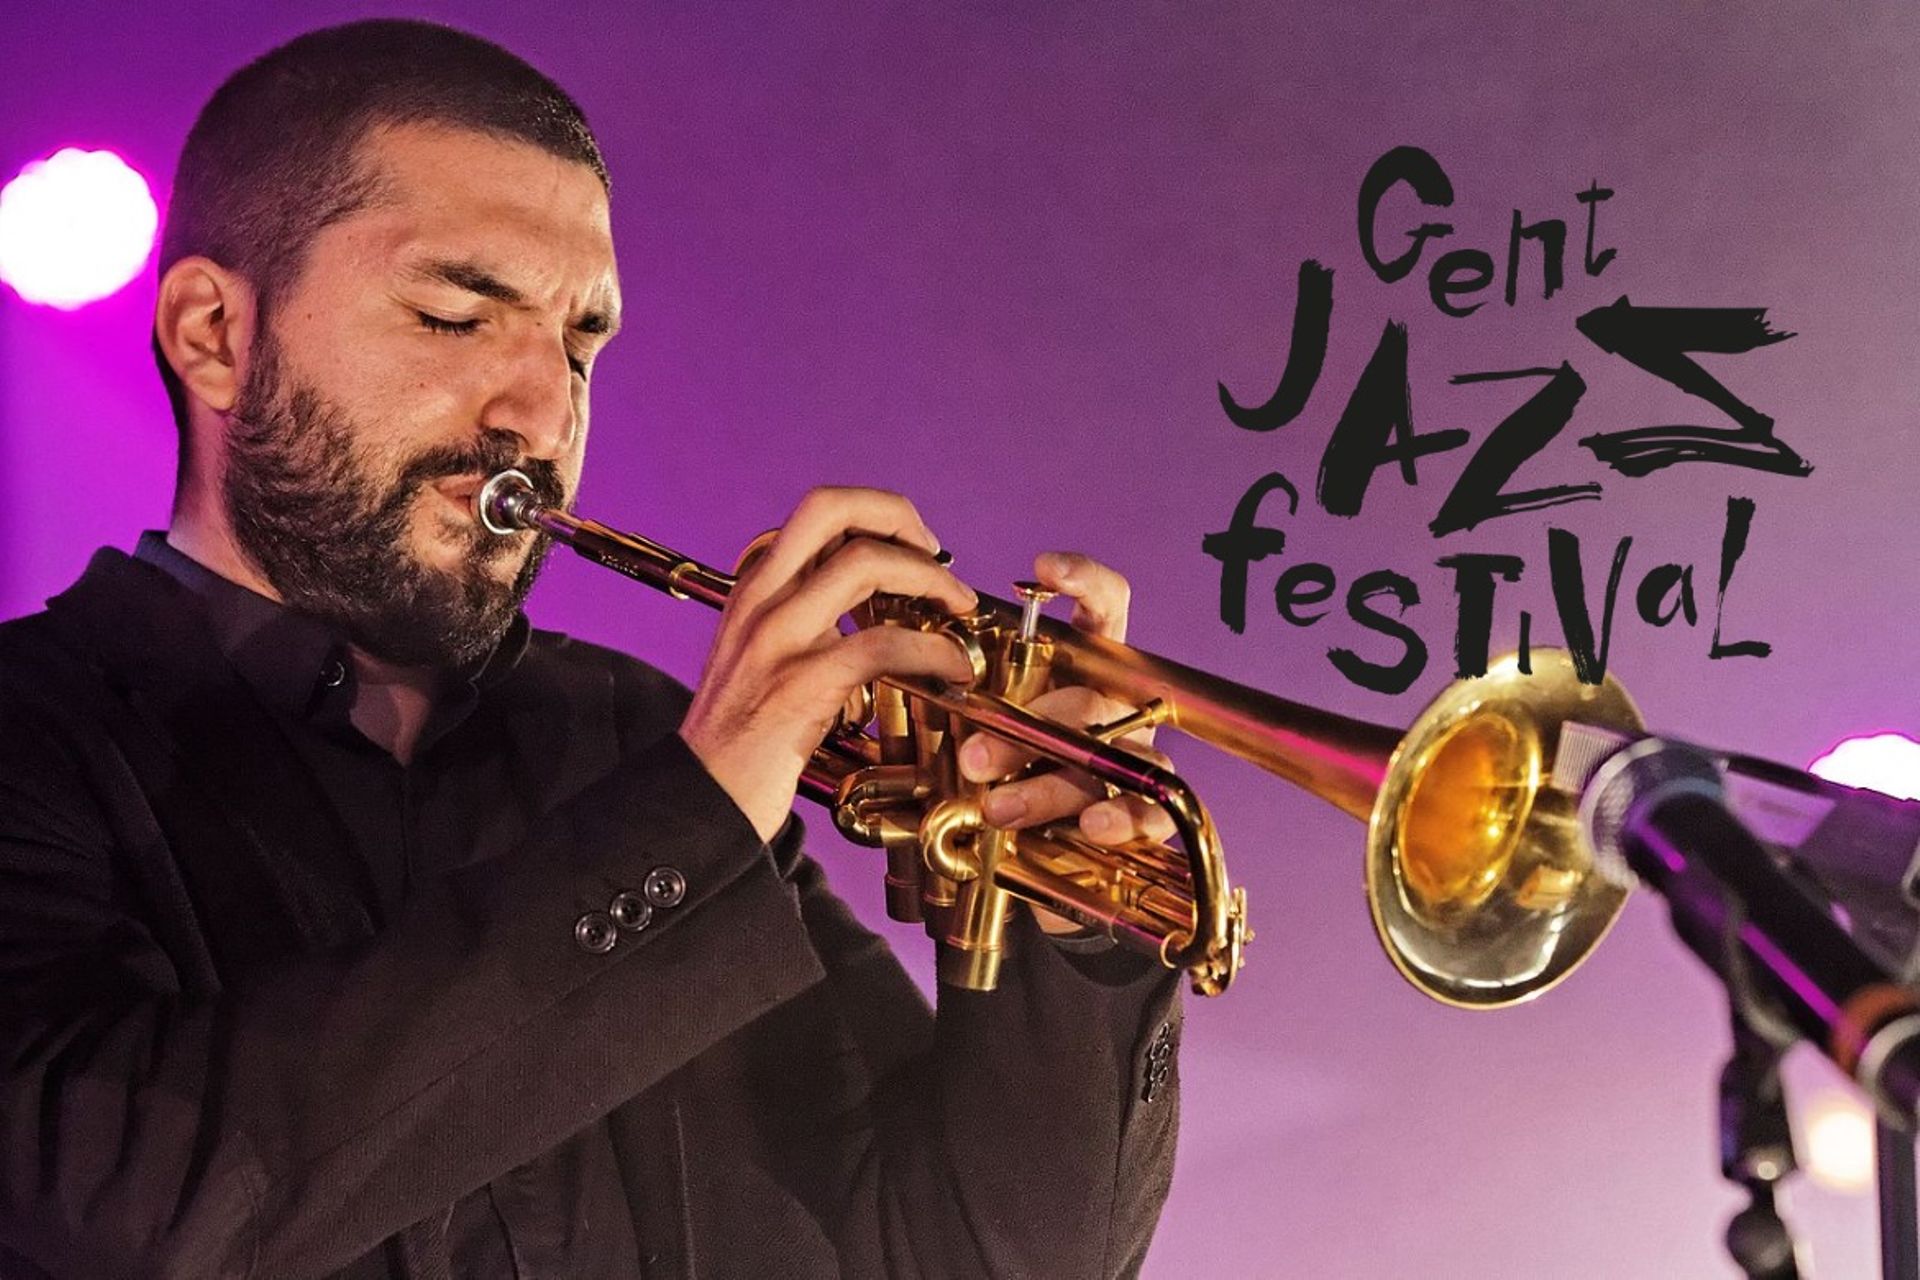 Le Gent Jazz Festival du 8 au 18 juillet 2020, voici les premiers noms